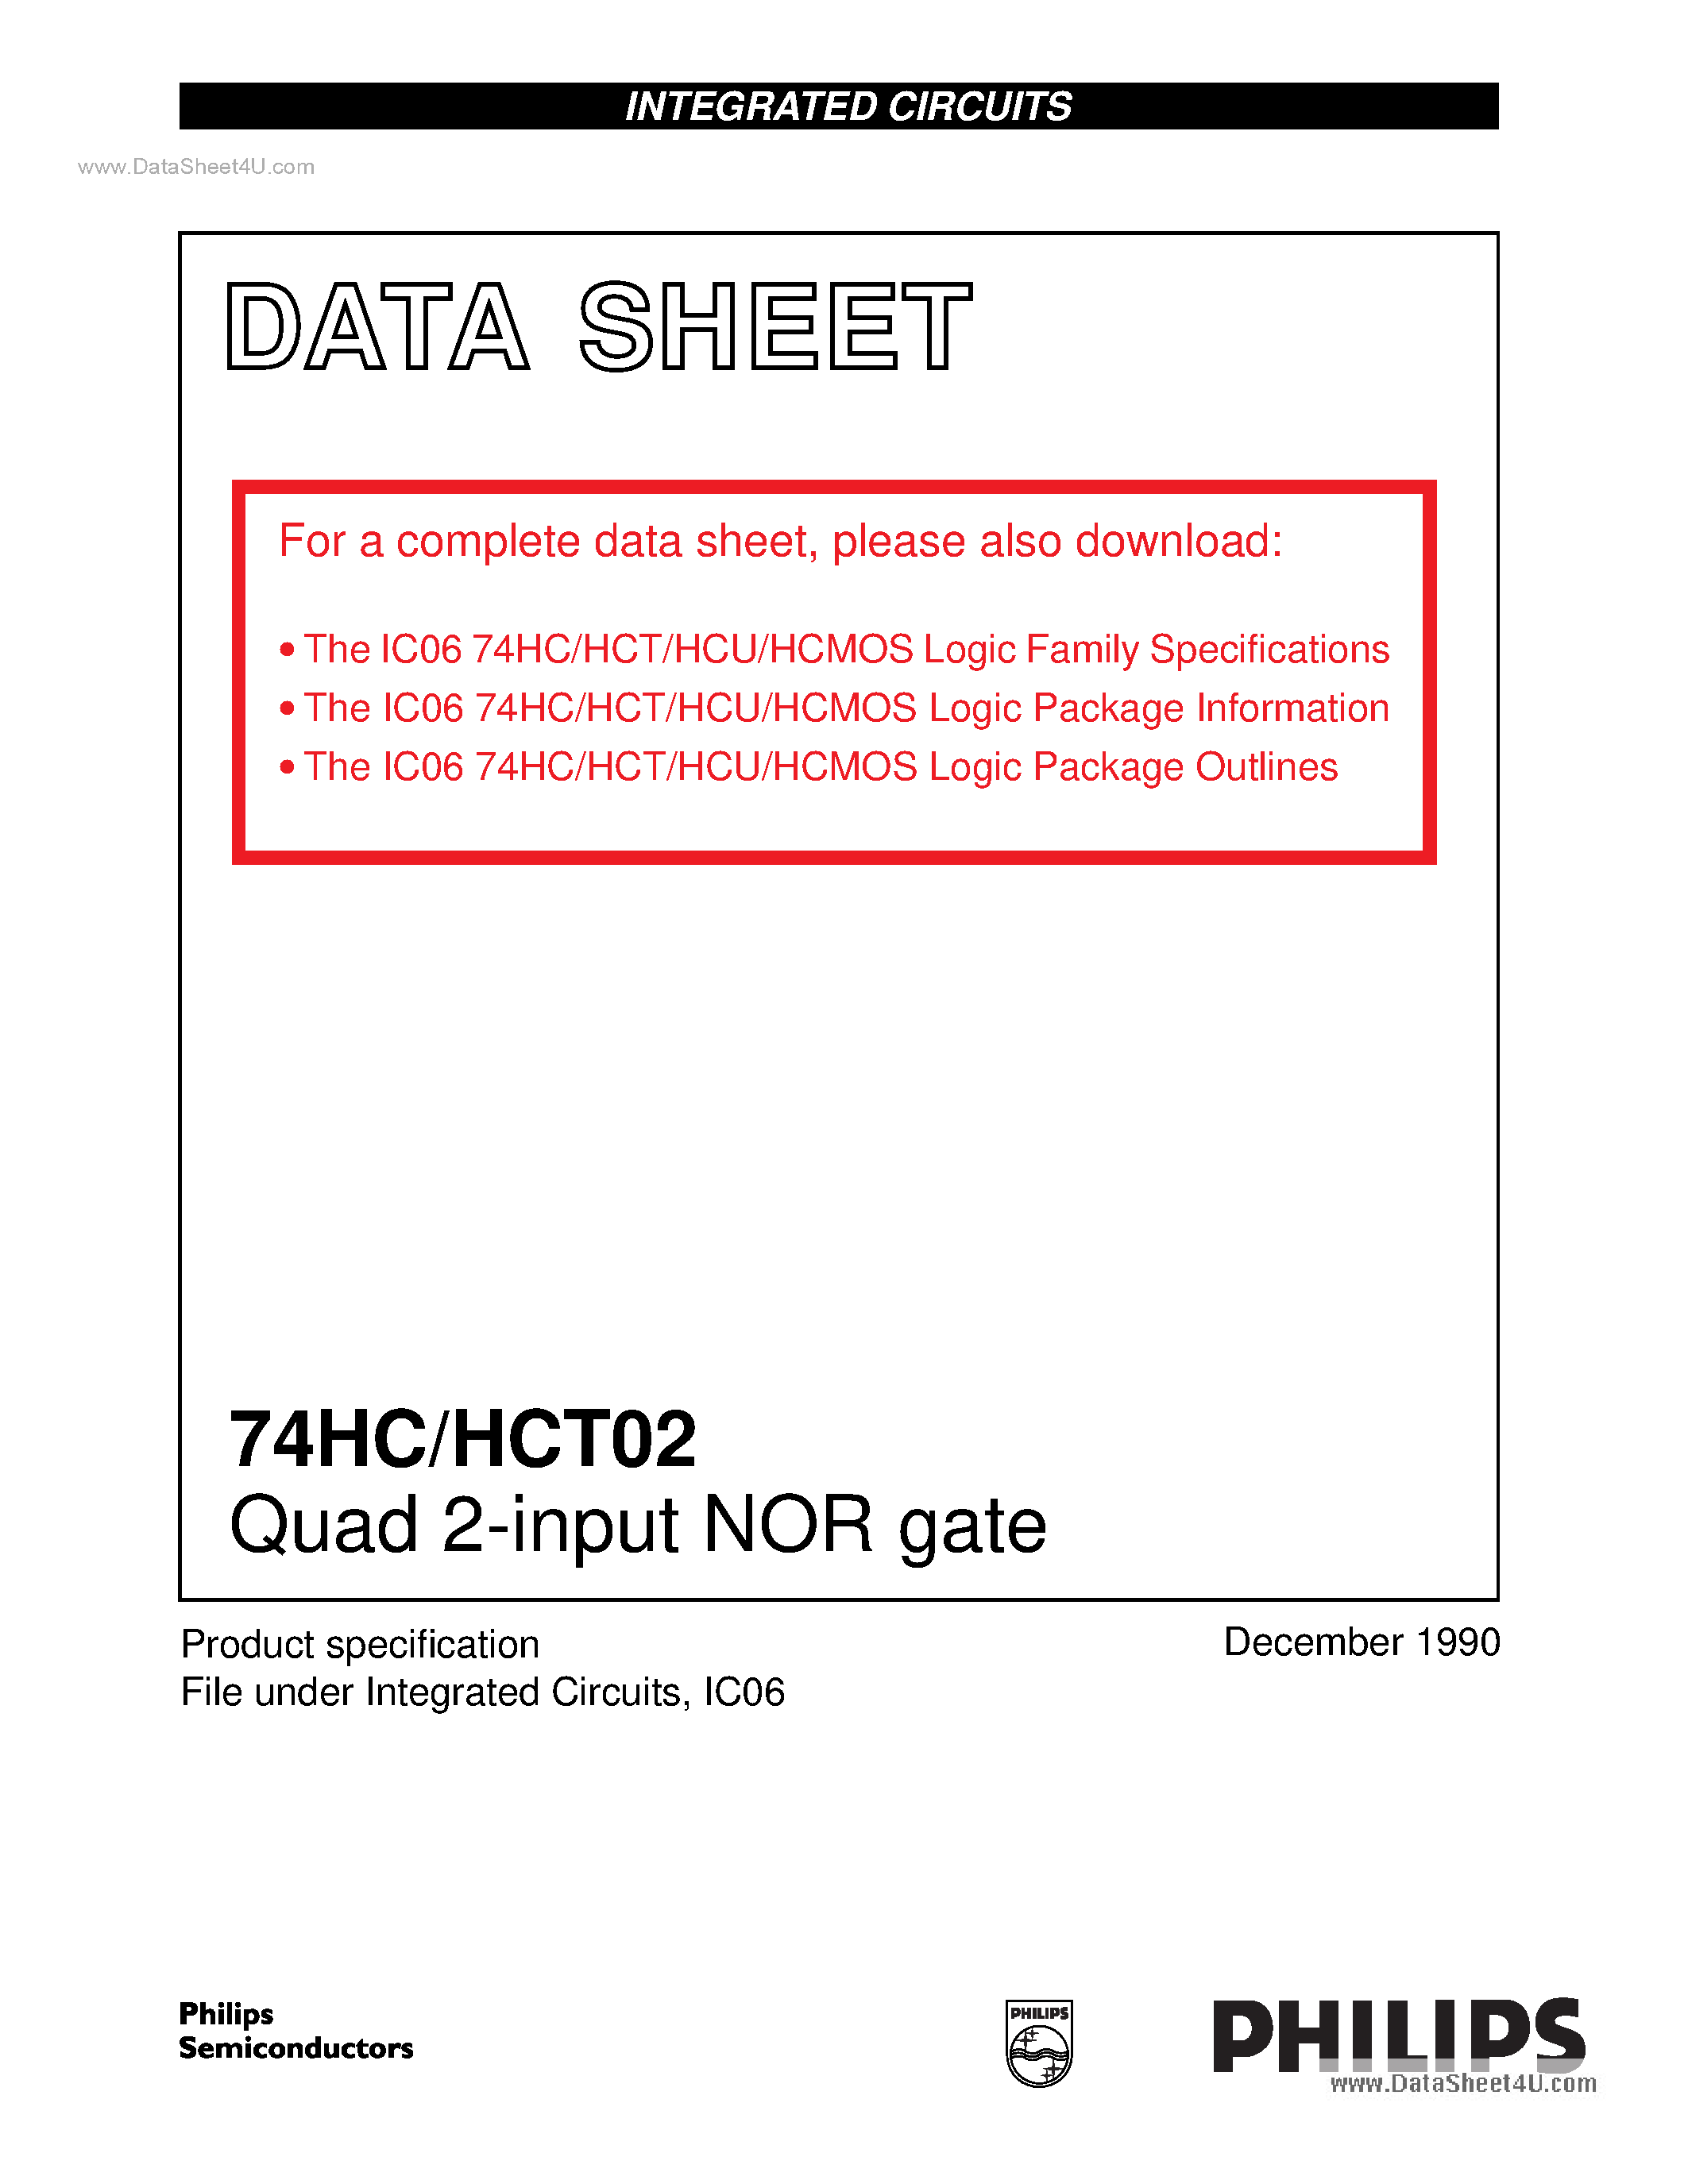 Даташит 74HC02 - Quad 2-input NOR gate страница 1